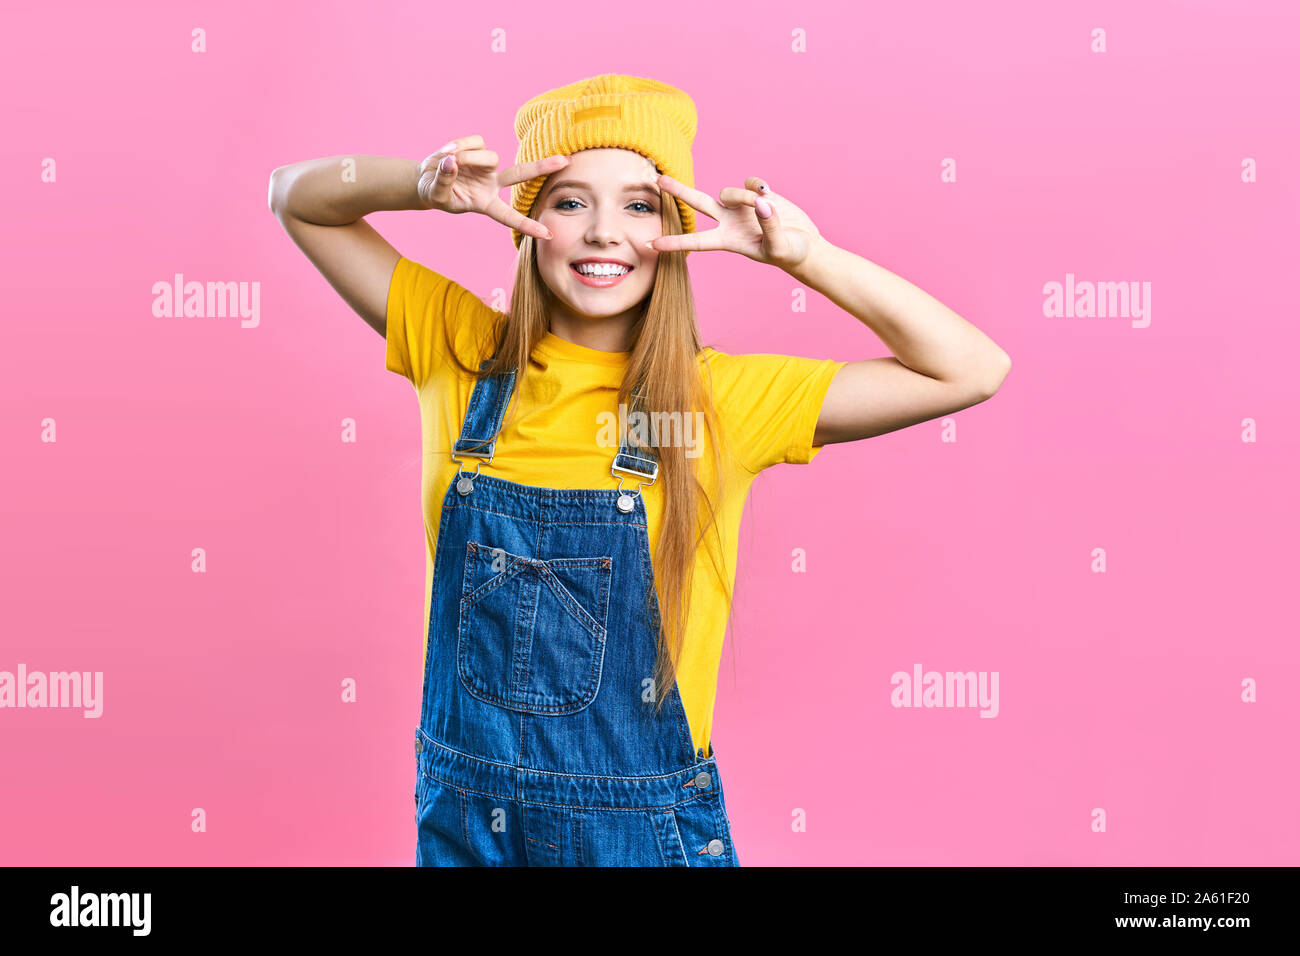 Portret ein hübsches Mädchen in Jeans Overalls und einem gelben Hut auf einem rosa Hintergrund. Fashionista lady Schüler lächelnd. Helle trendy Studio fashion Bild Stockfoto